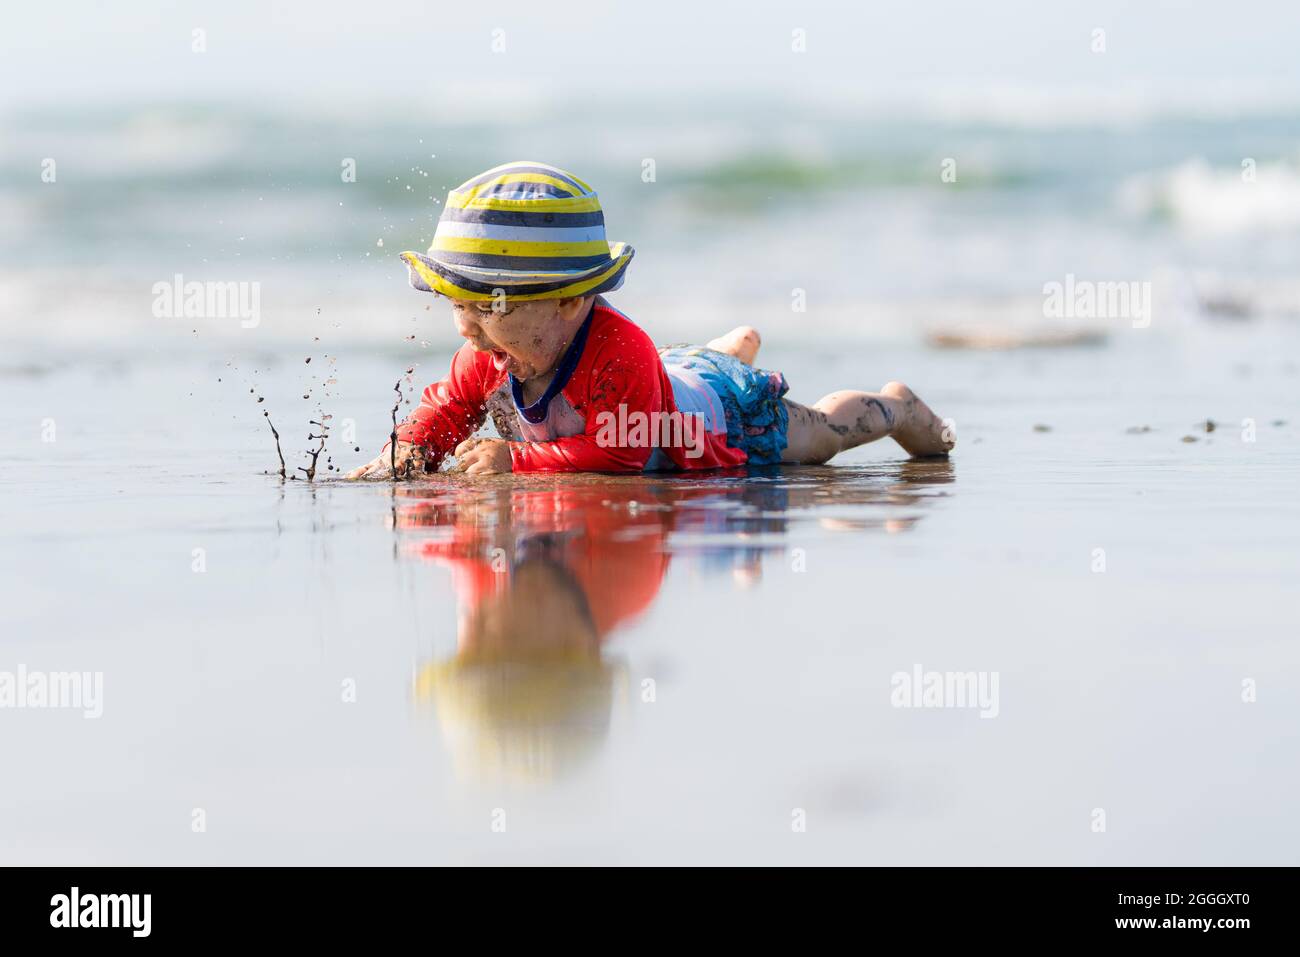 Très beau bébé barbotant de l'eau et rampant à la plage.L'enfant porte un chapeau rayé.Sa réflexion peut être vue sur l'eau. Banque D'Images